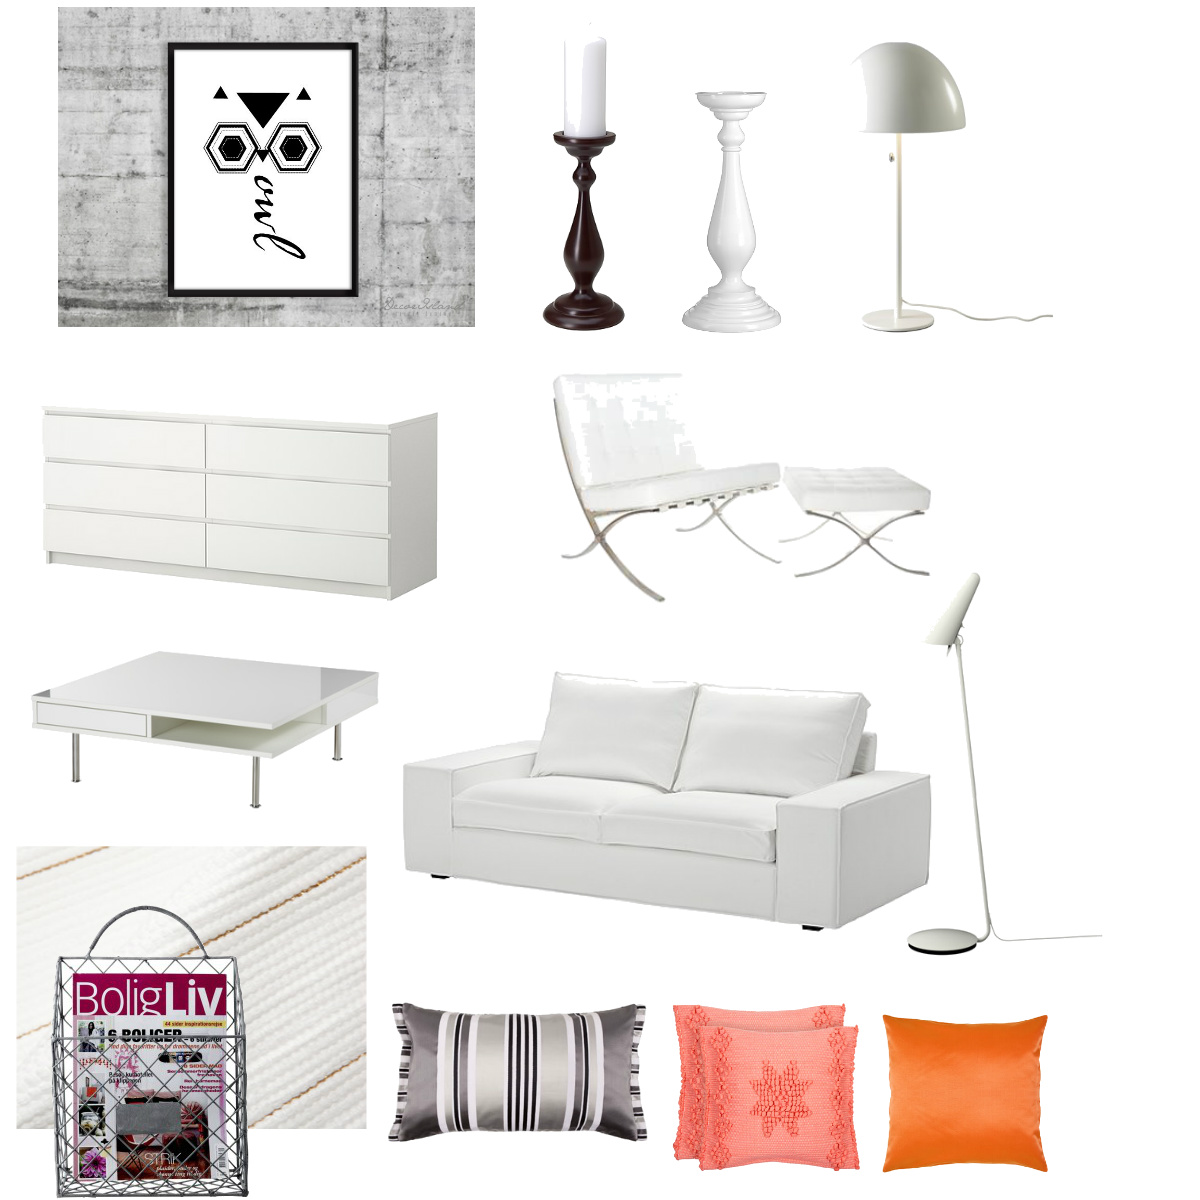 biały salon skandynawski,białe wnętrza,nowoczesny biały fotel,druciany gazetnik,biala lakierowana komoda,postery,kwadratowy stolik kawowy,różowa poduszka,pomarańczowa poduszka,biało-czarna poduszka